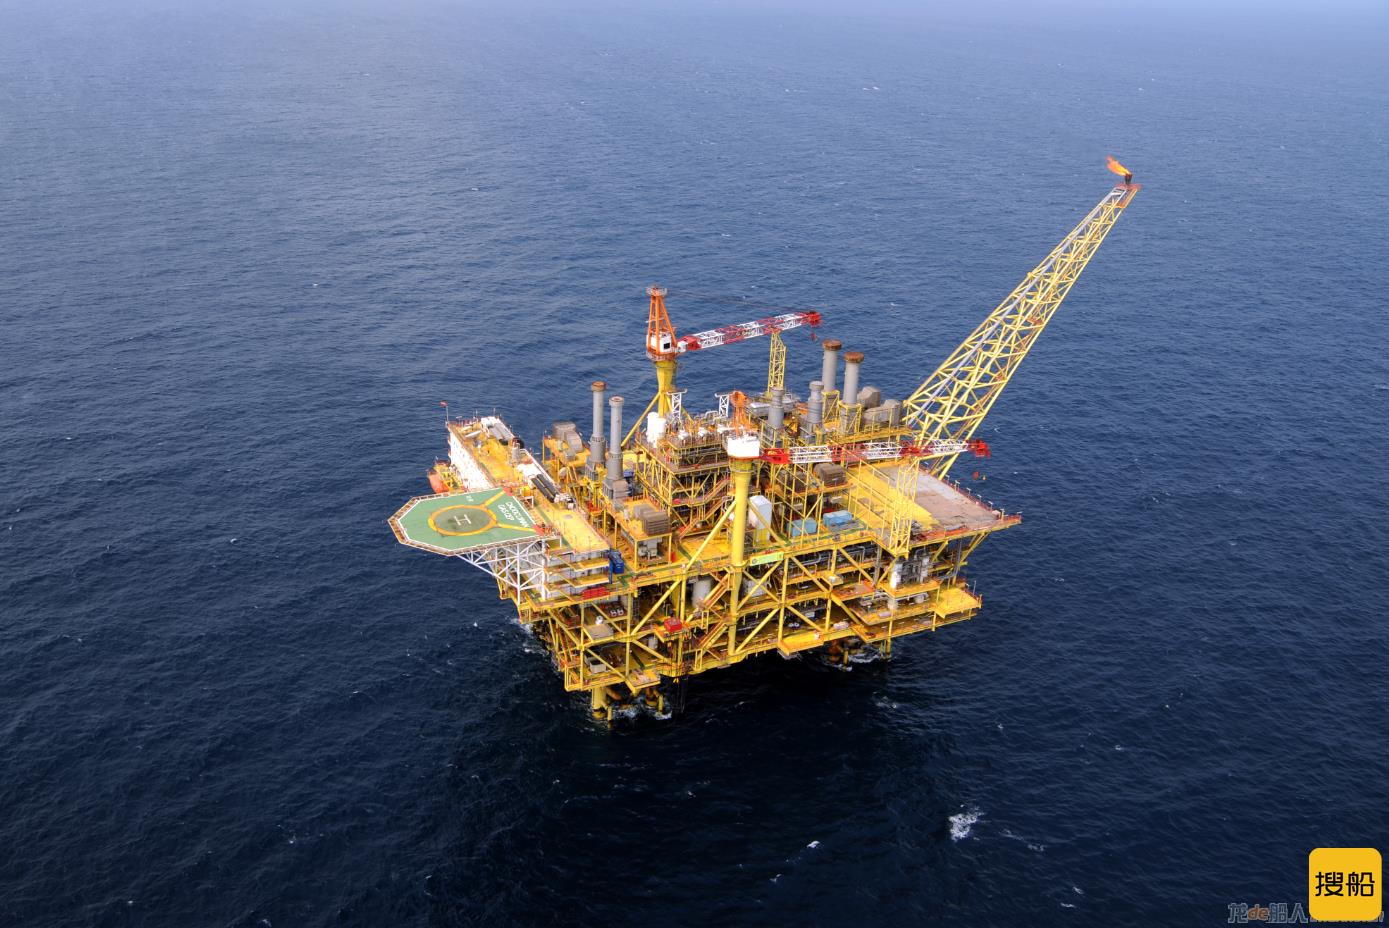 新气源从深海来了! 南海东部海域流花29-2气田顺利投产